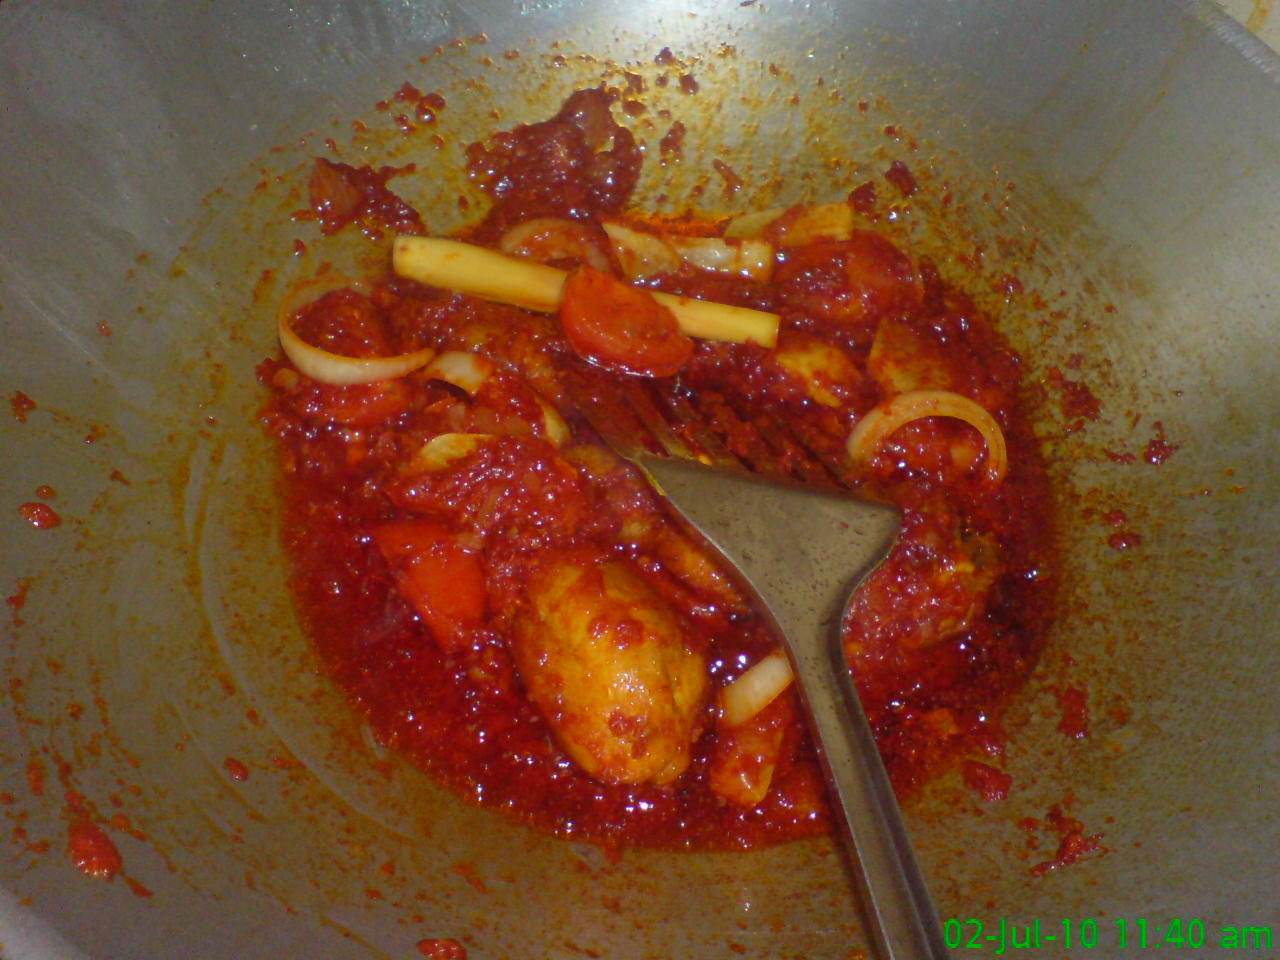 MAS'S FAMILY: Ayam masak merah dan sotong masak hitam